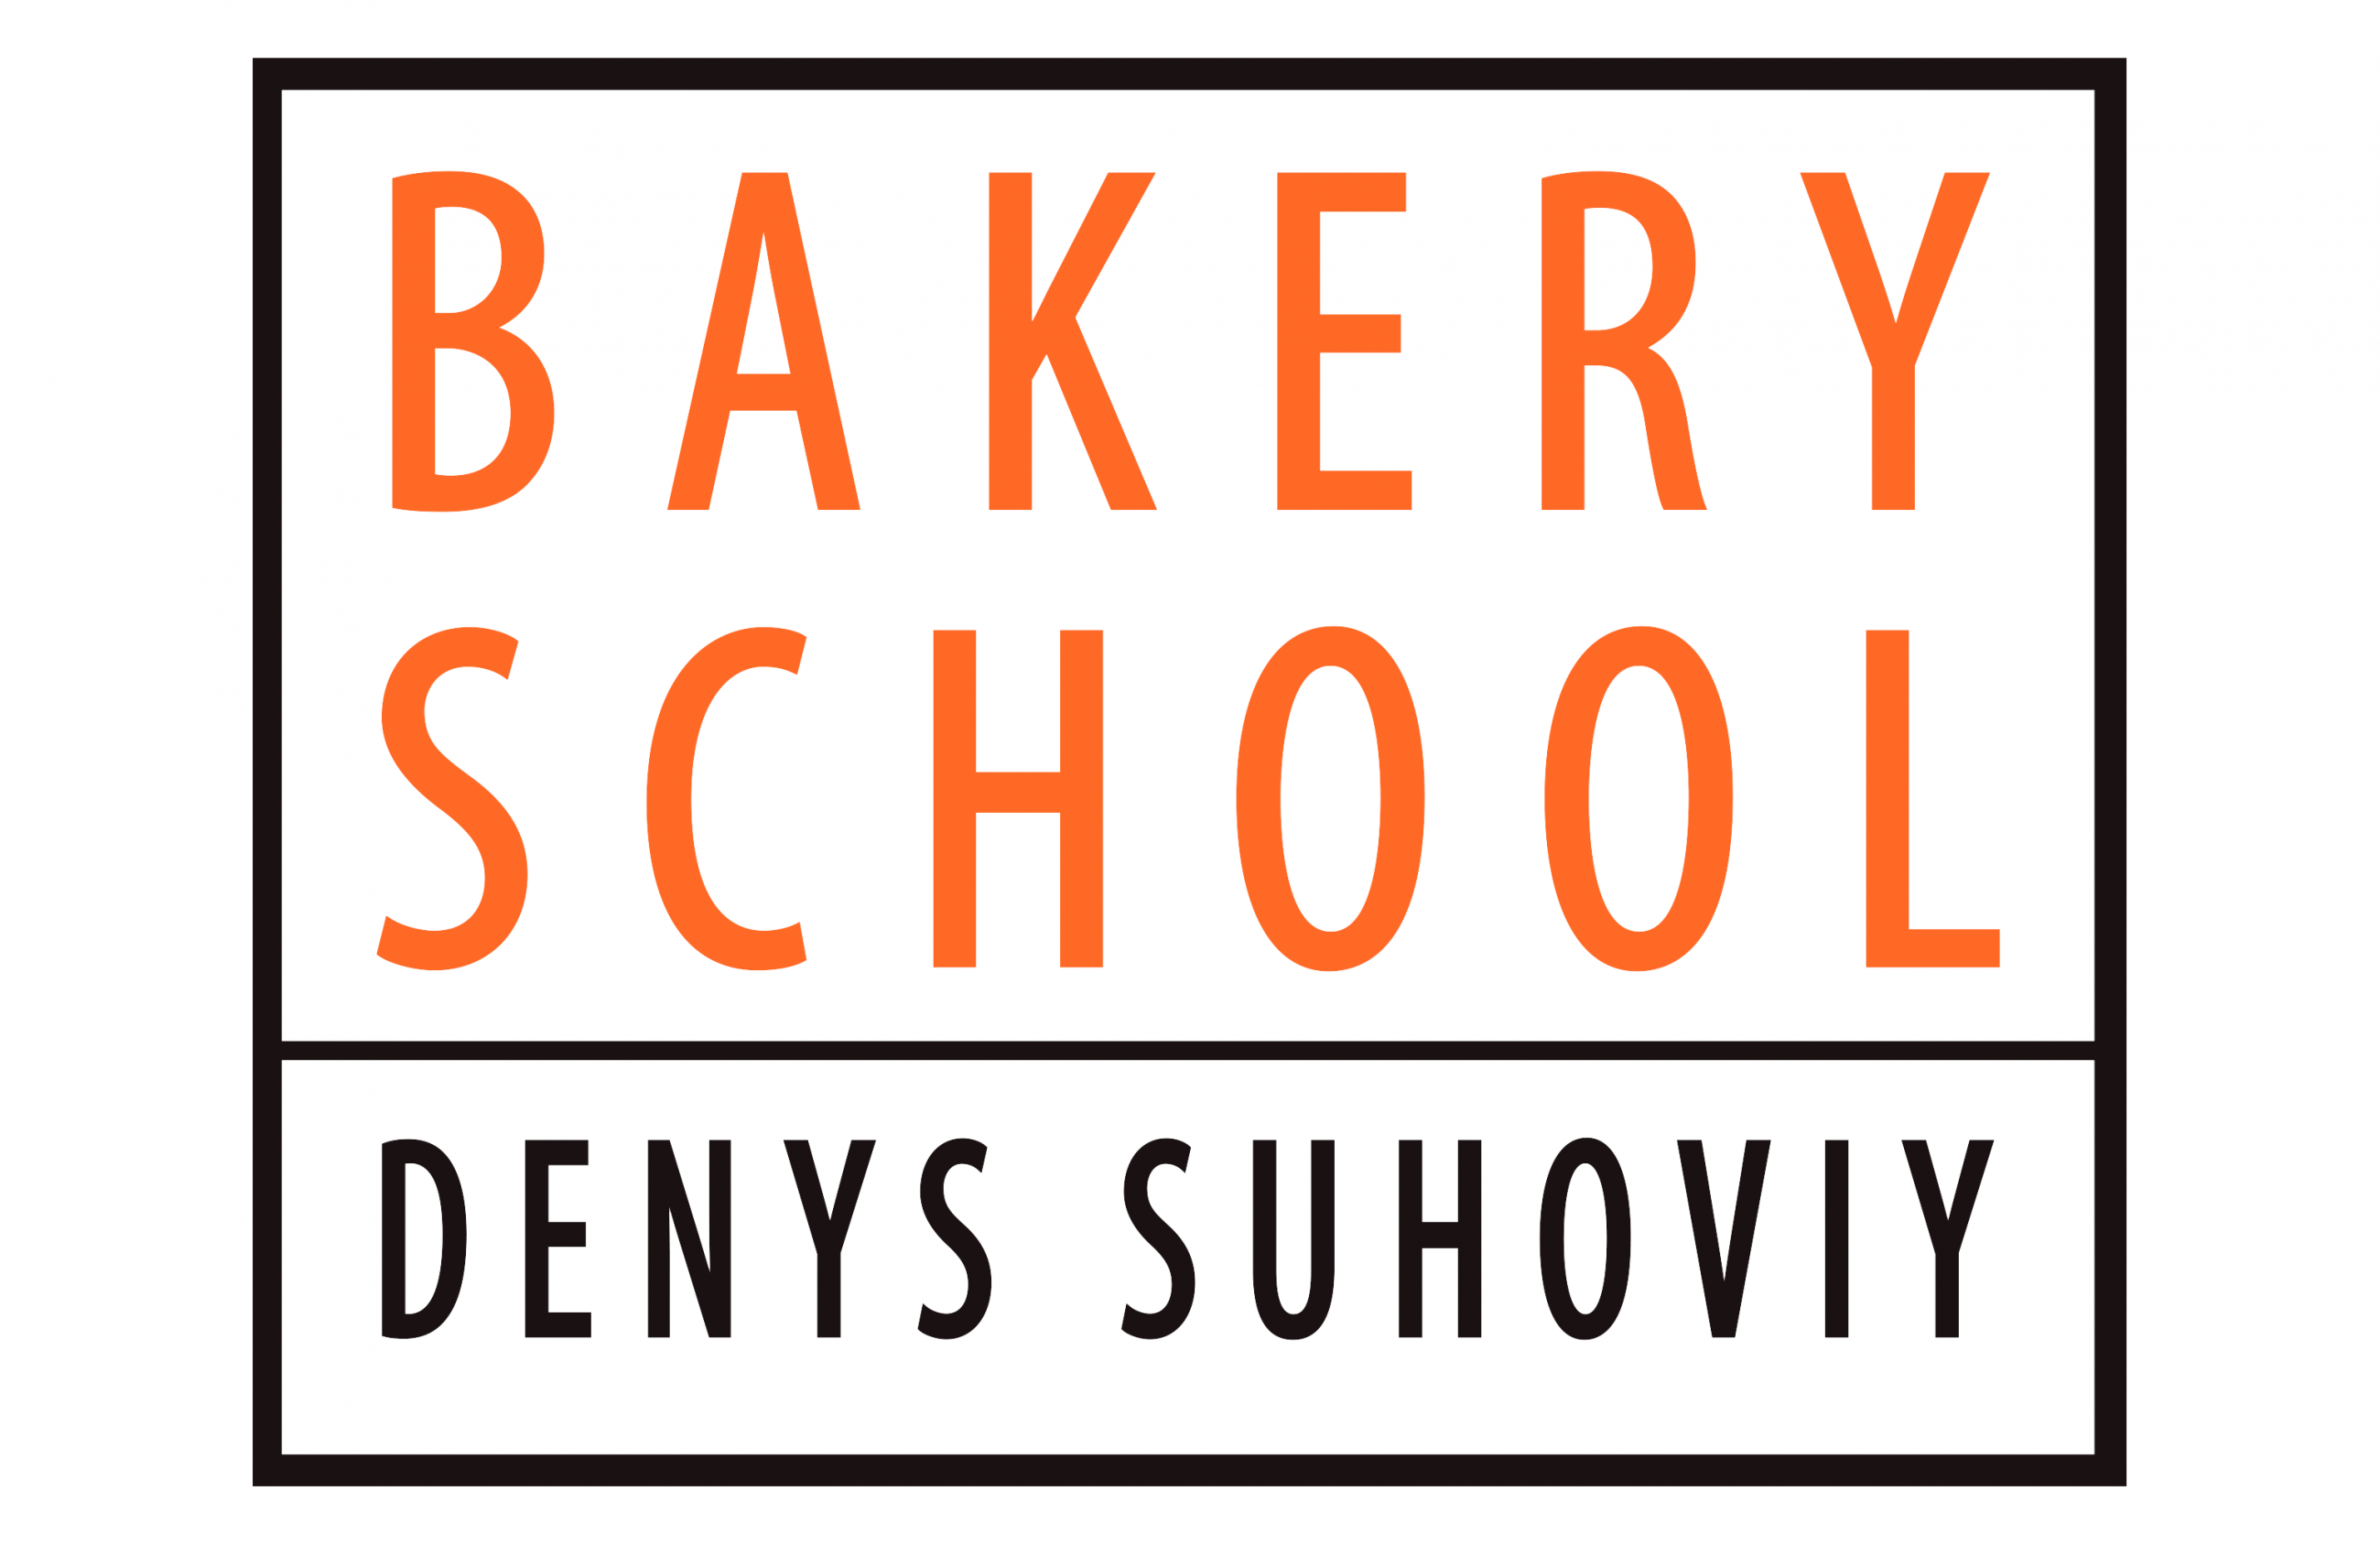 Denys Suhoviy Bakery School